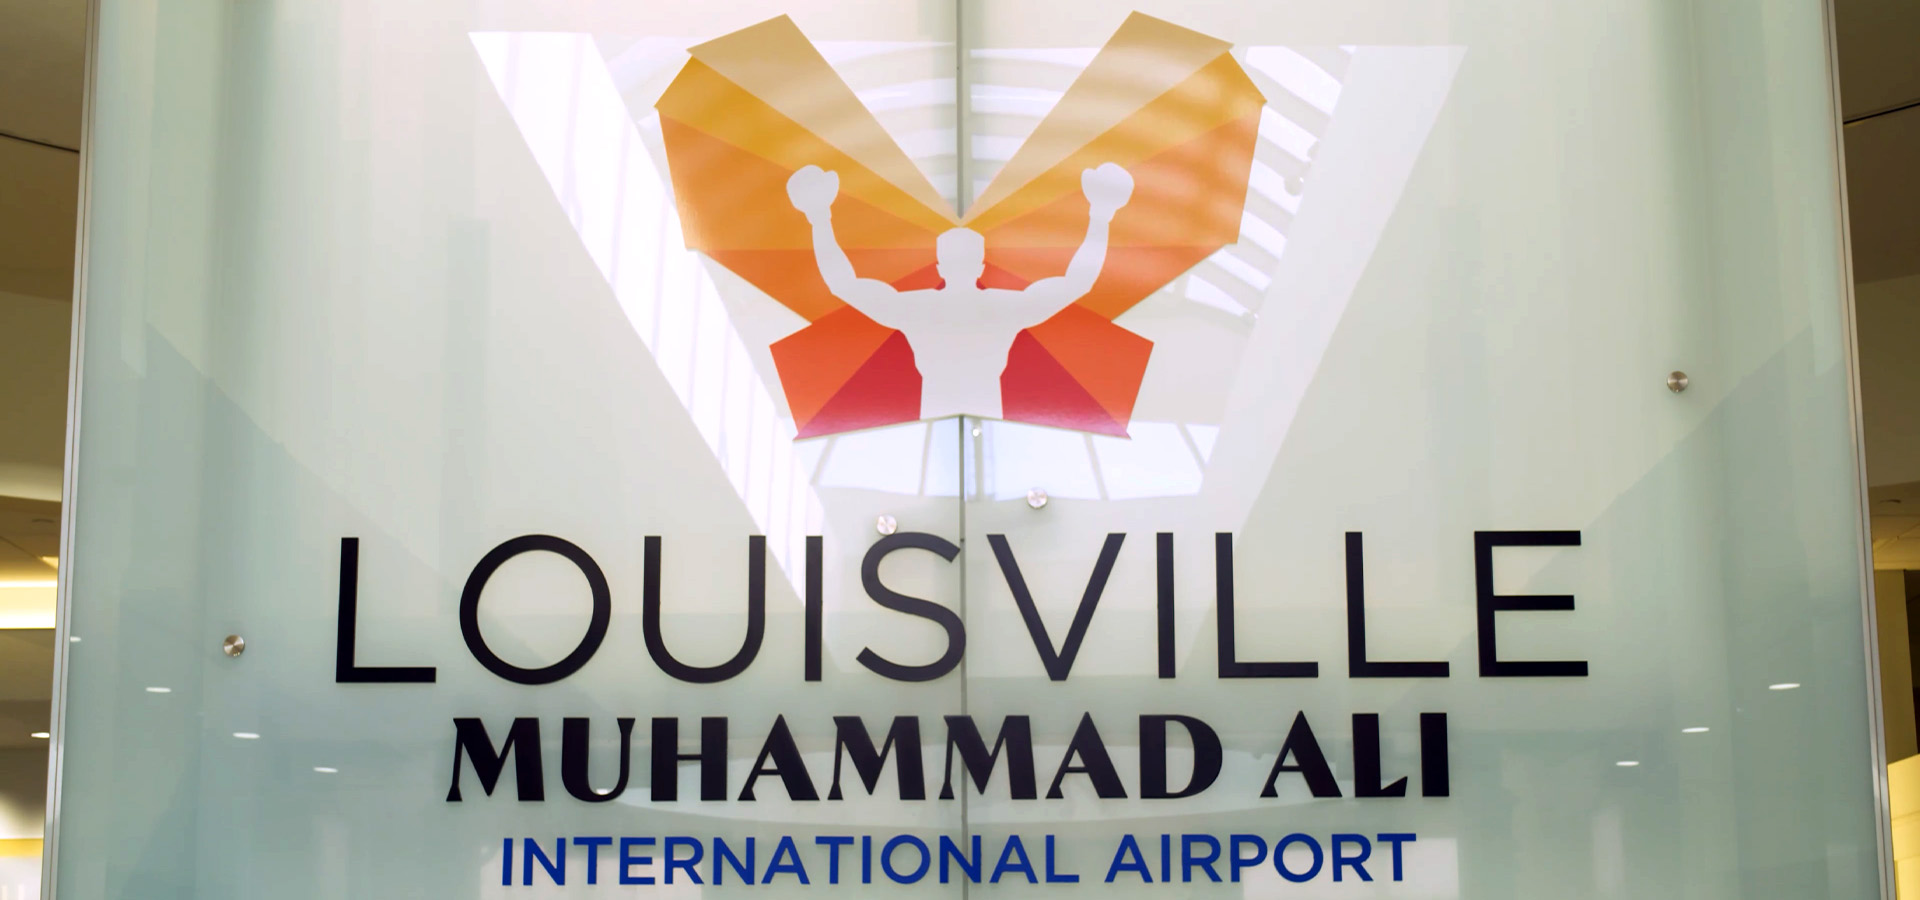 Louisville Muhammad Ali International Airport